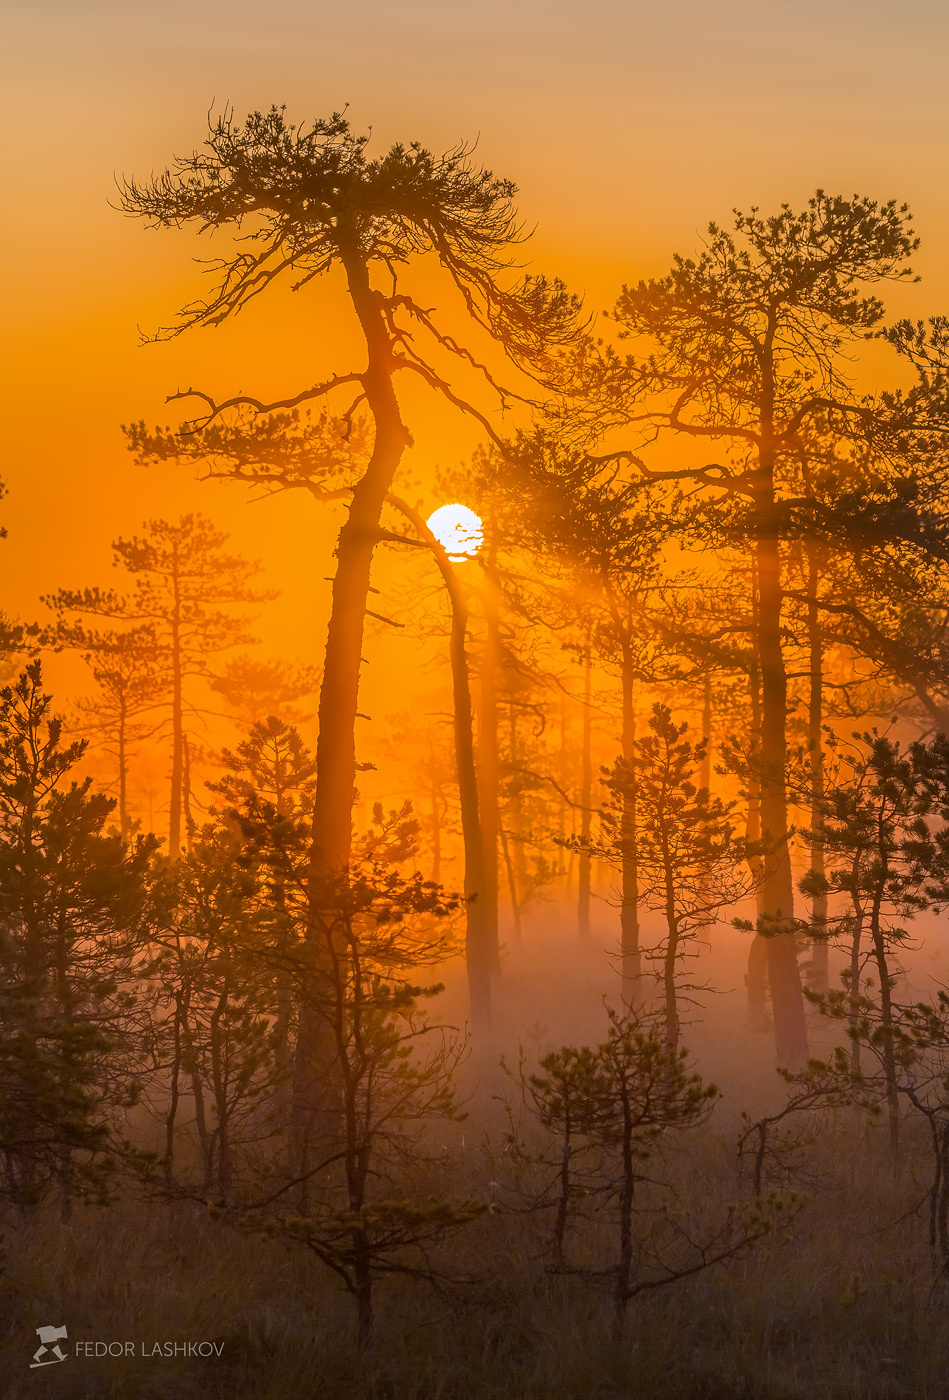 Оранжевый мир фототур Ленинградская область деревья сосна болото рассвет туман лето солнце лучи оранжевый